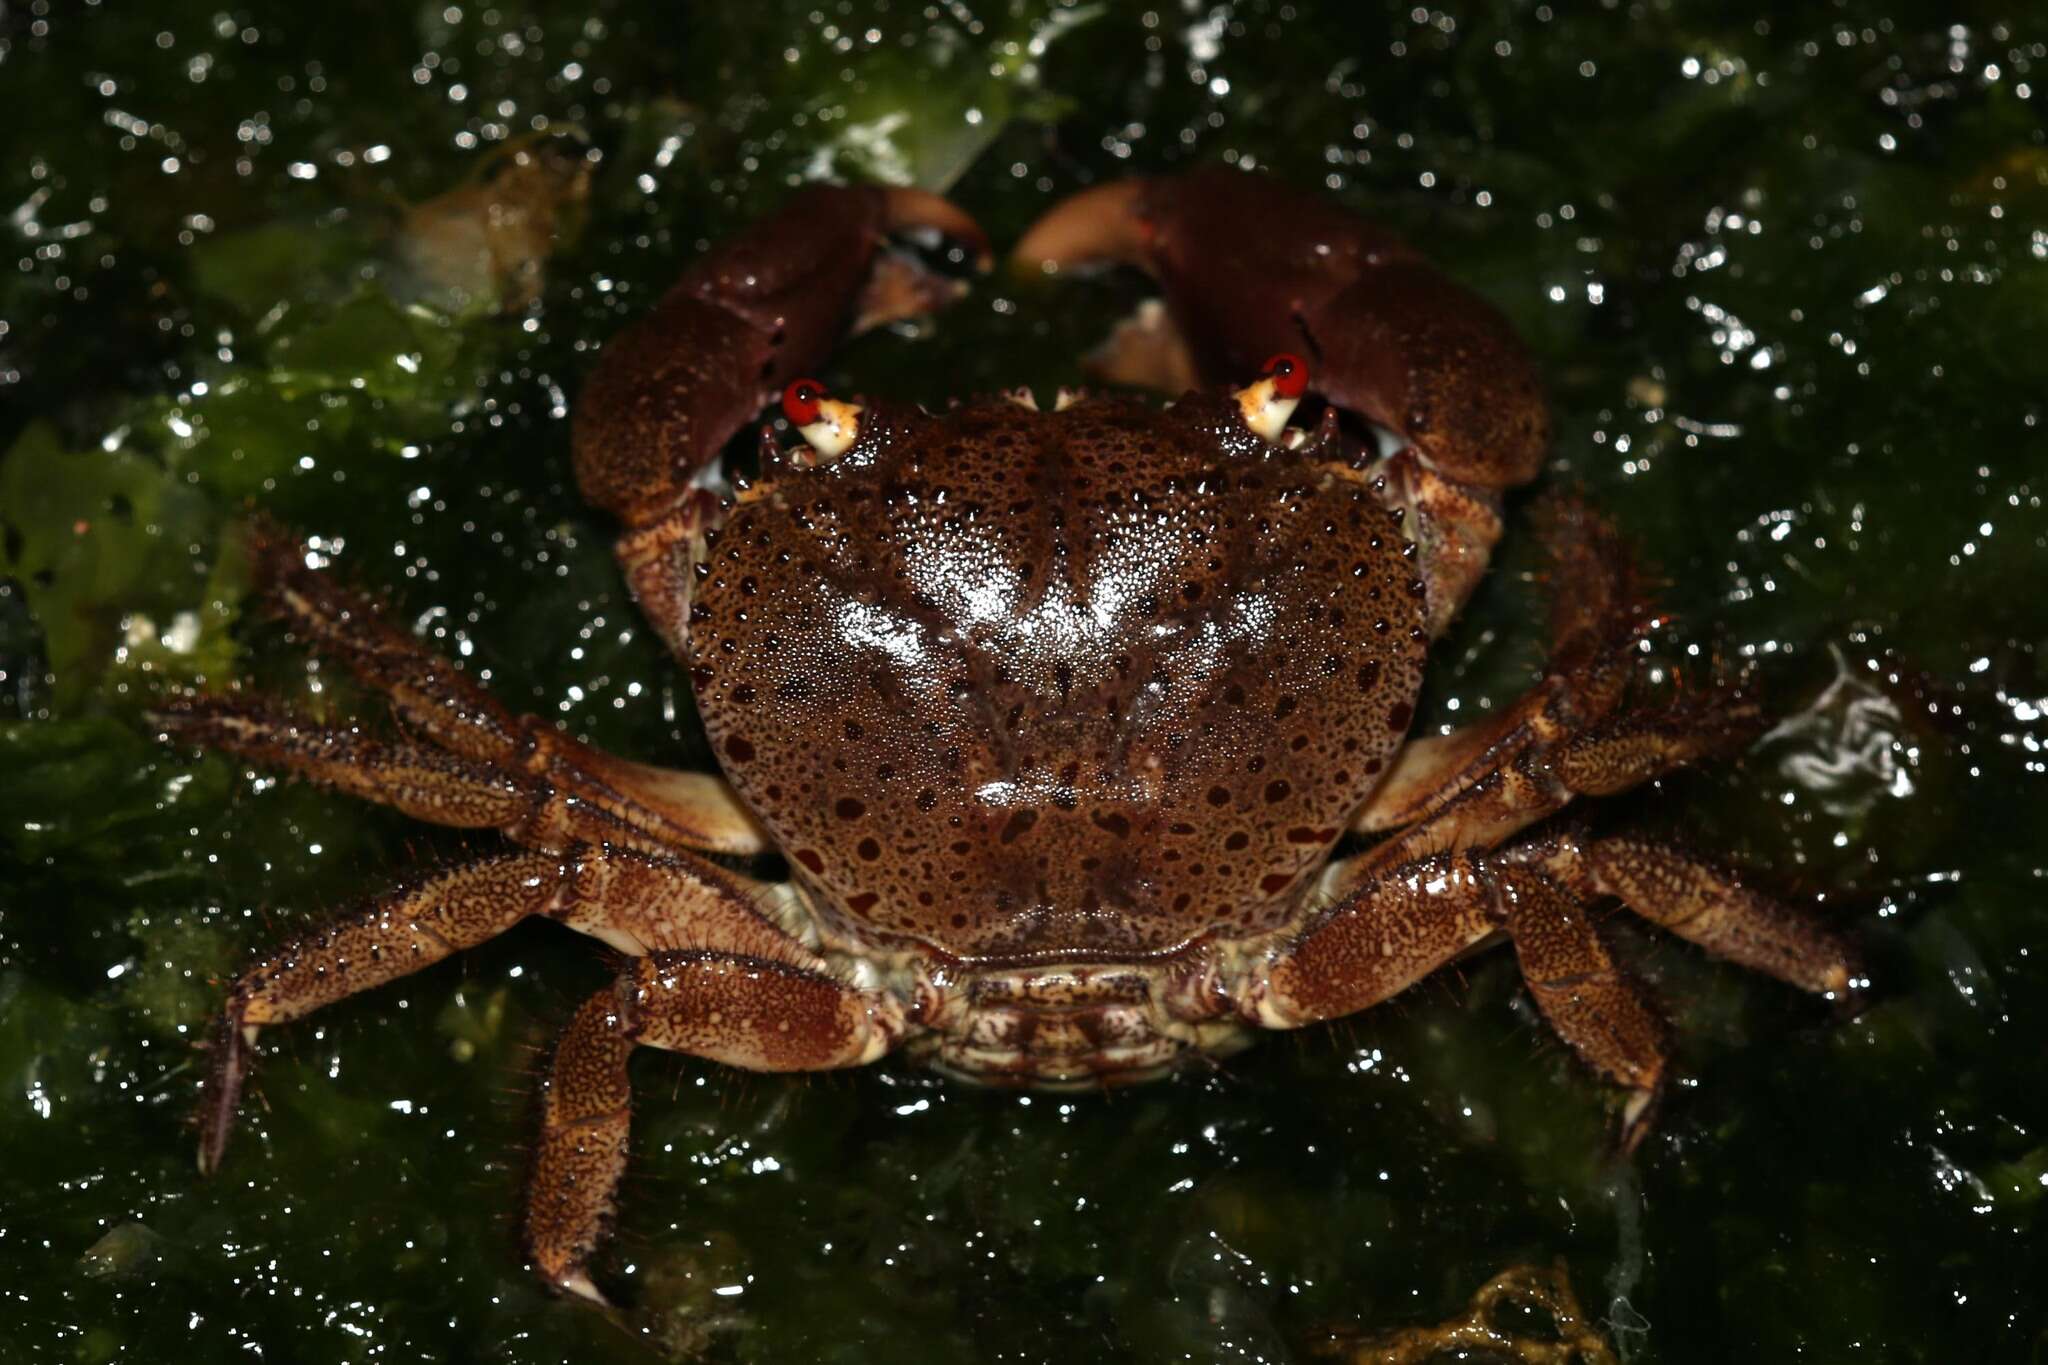 Image of smooth redeye crab